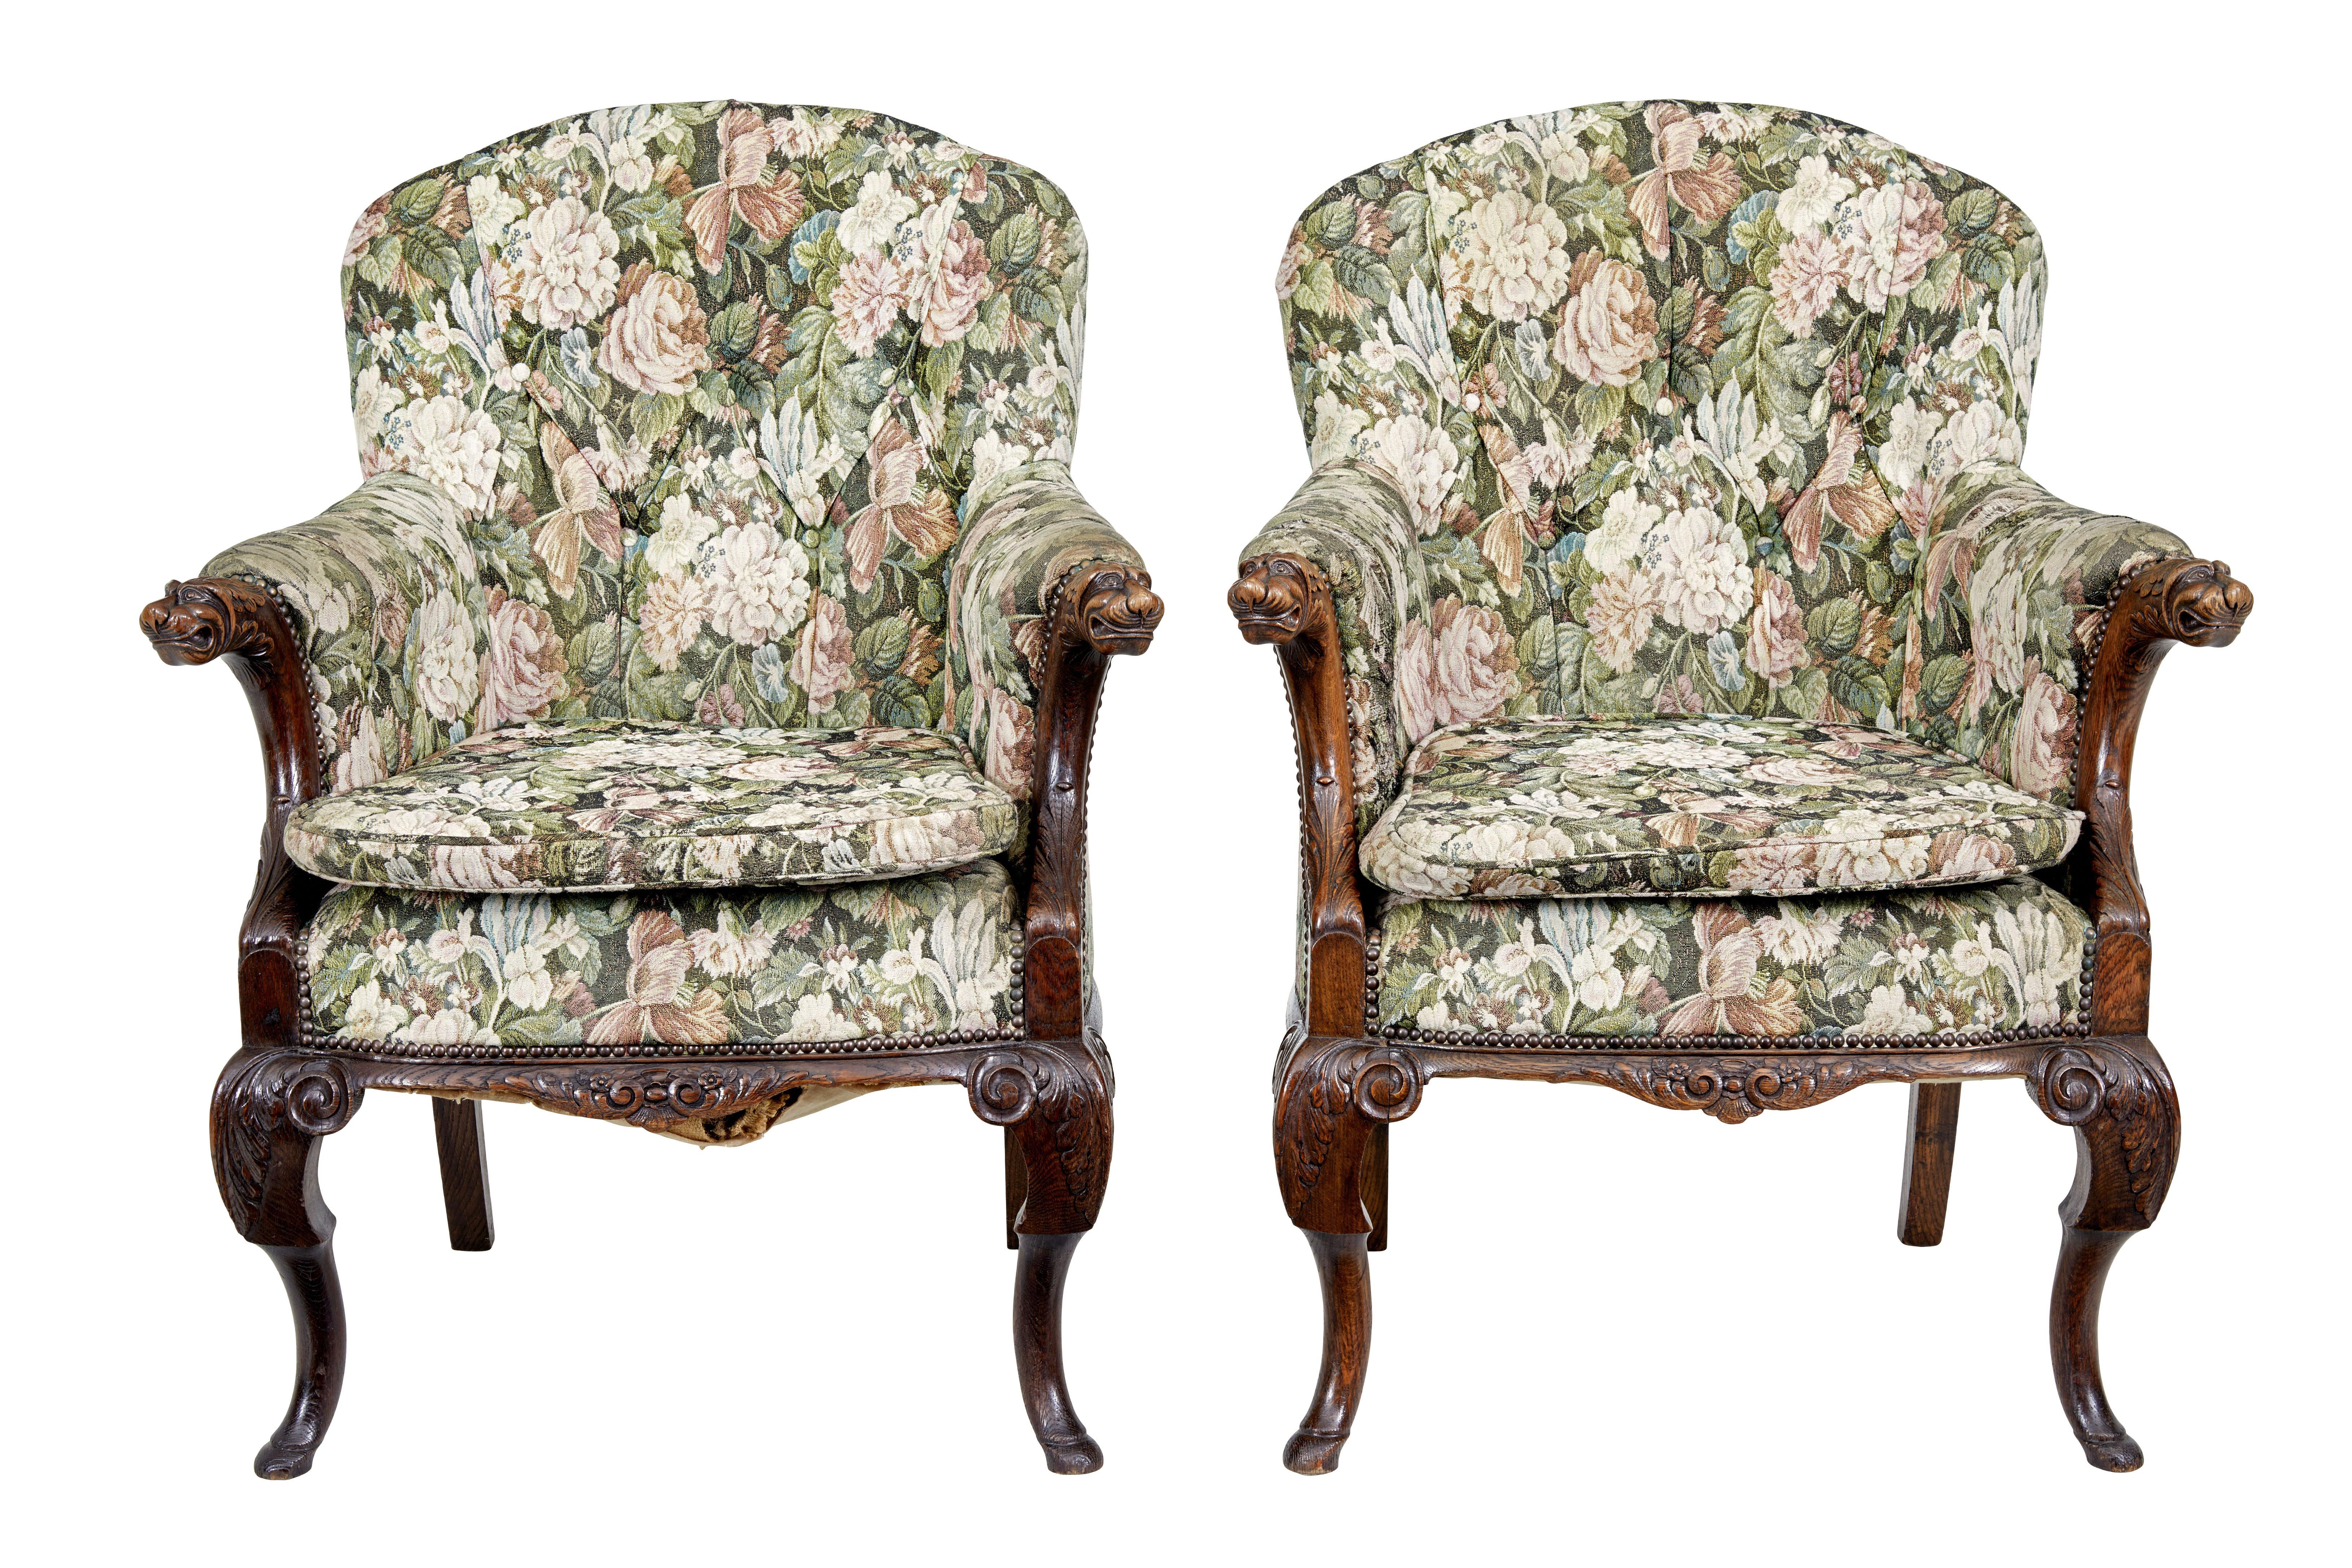 Paire de fauteuils en chêne français du 19ème siècle sculptés vers 1870.

Paire de fauteuils de belle qualité, abondamment sculptés.  Dossiers façonnés avec accoudoirs rembourrés et un pad d'assise supplémentaire pour plus de confort.

Les bras sont